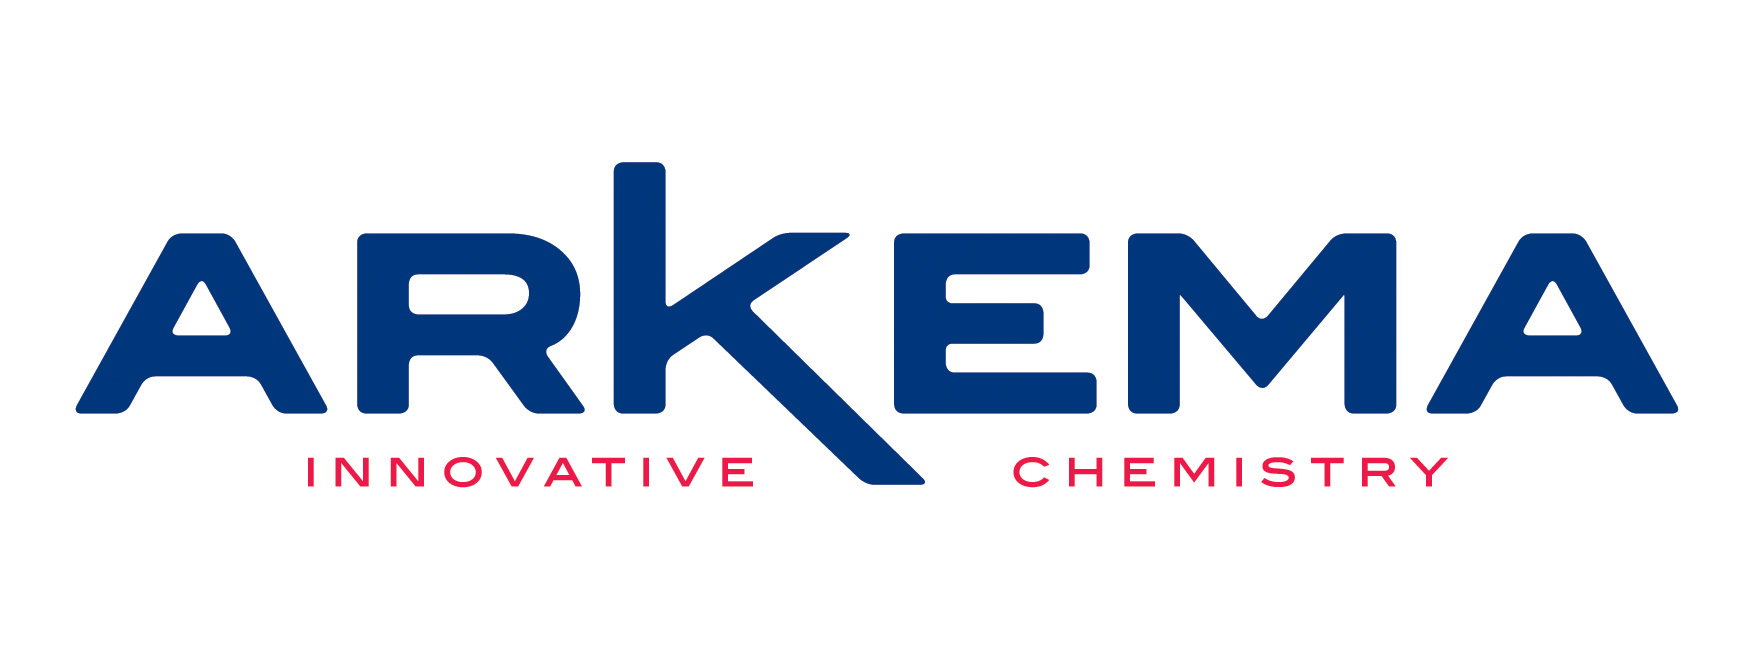 arkema logo